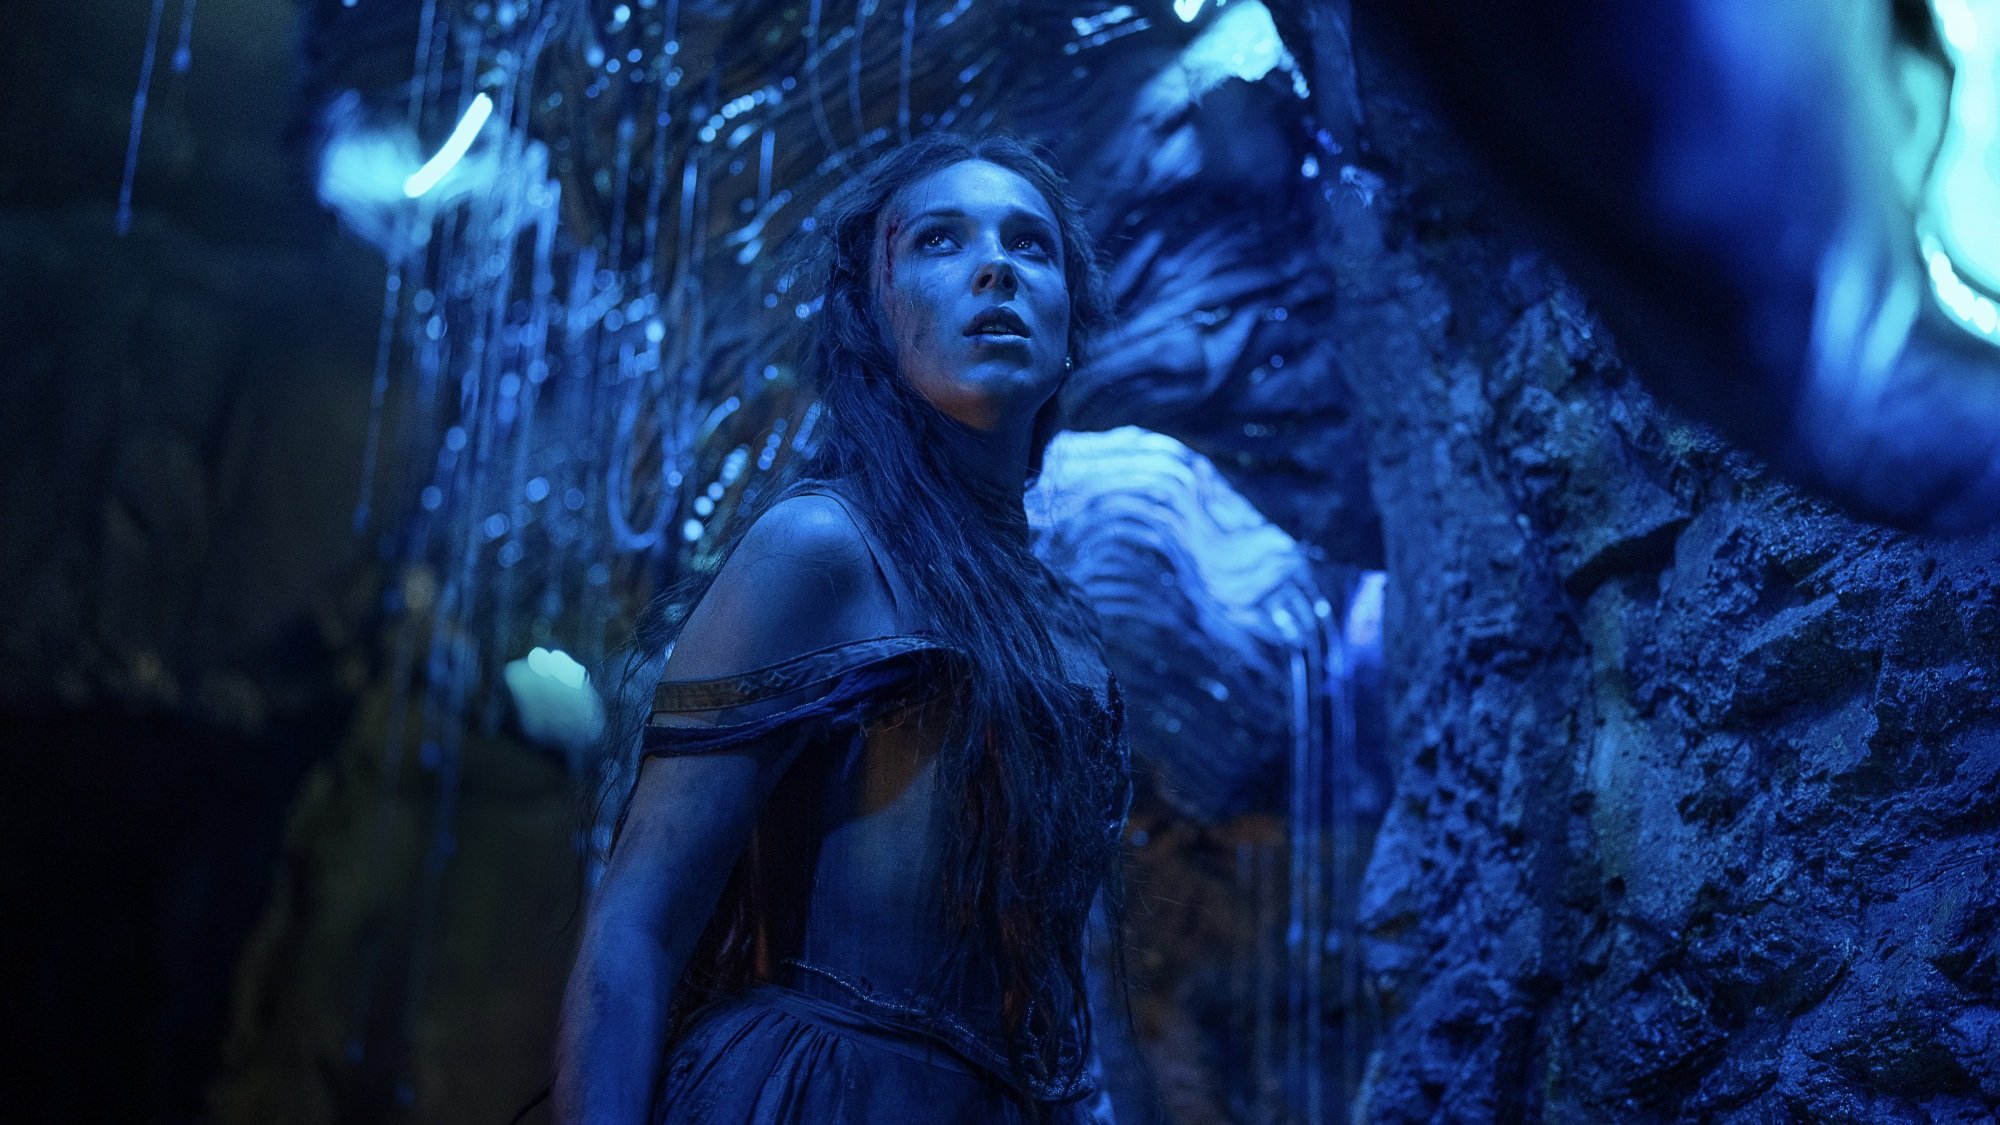 Une jeune femme se tient dans une grotte éclairée en bleu par des vers luisants.